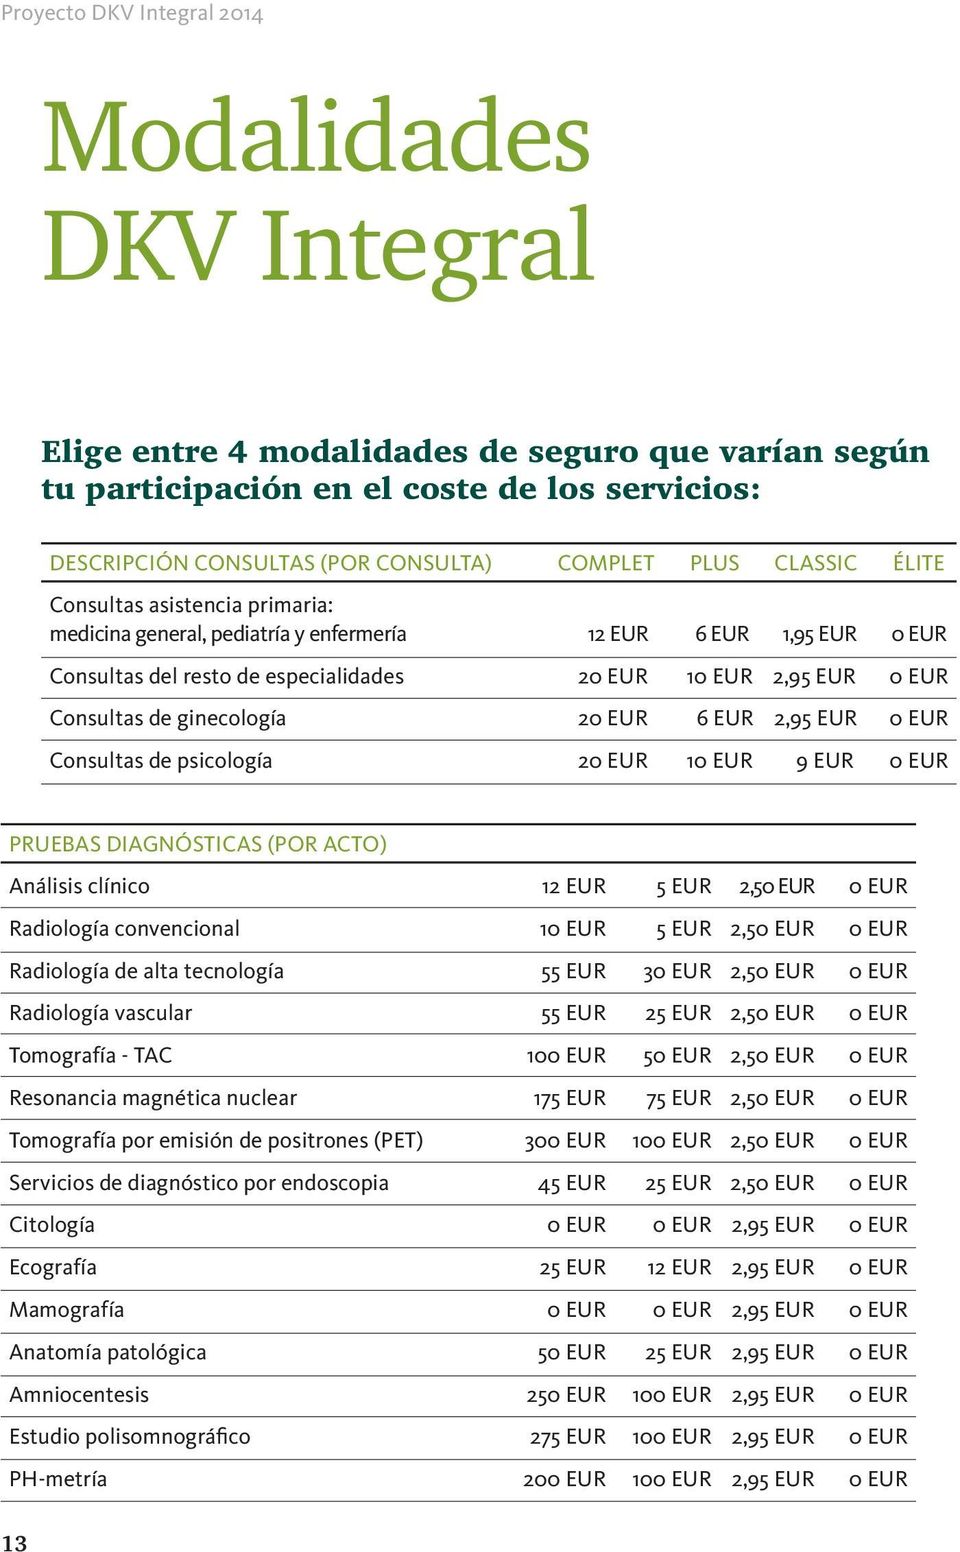 EUR 0 EUR Consultas de psicología 20 EUR 10 EUR 9 EUR 0 EUR PRUEBAS DIAGNÓSTICAS (POR ACTO) Análisis clínico 12 EUR 5 EUR 2,50 EUR 0 EUR Radiología convencional 10 EUR 5 EUR 2,50 EUR 0 EUR Radiología